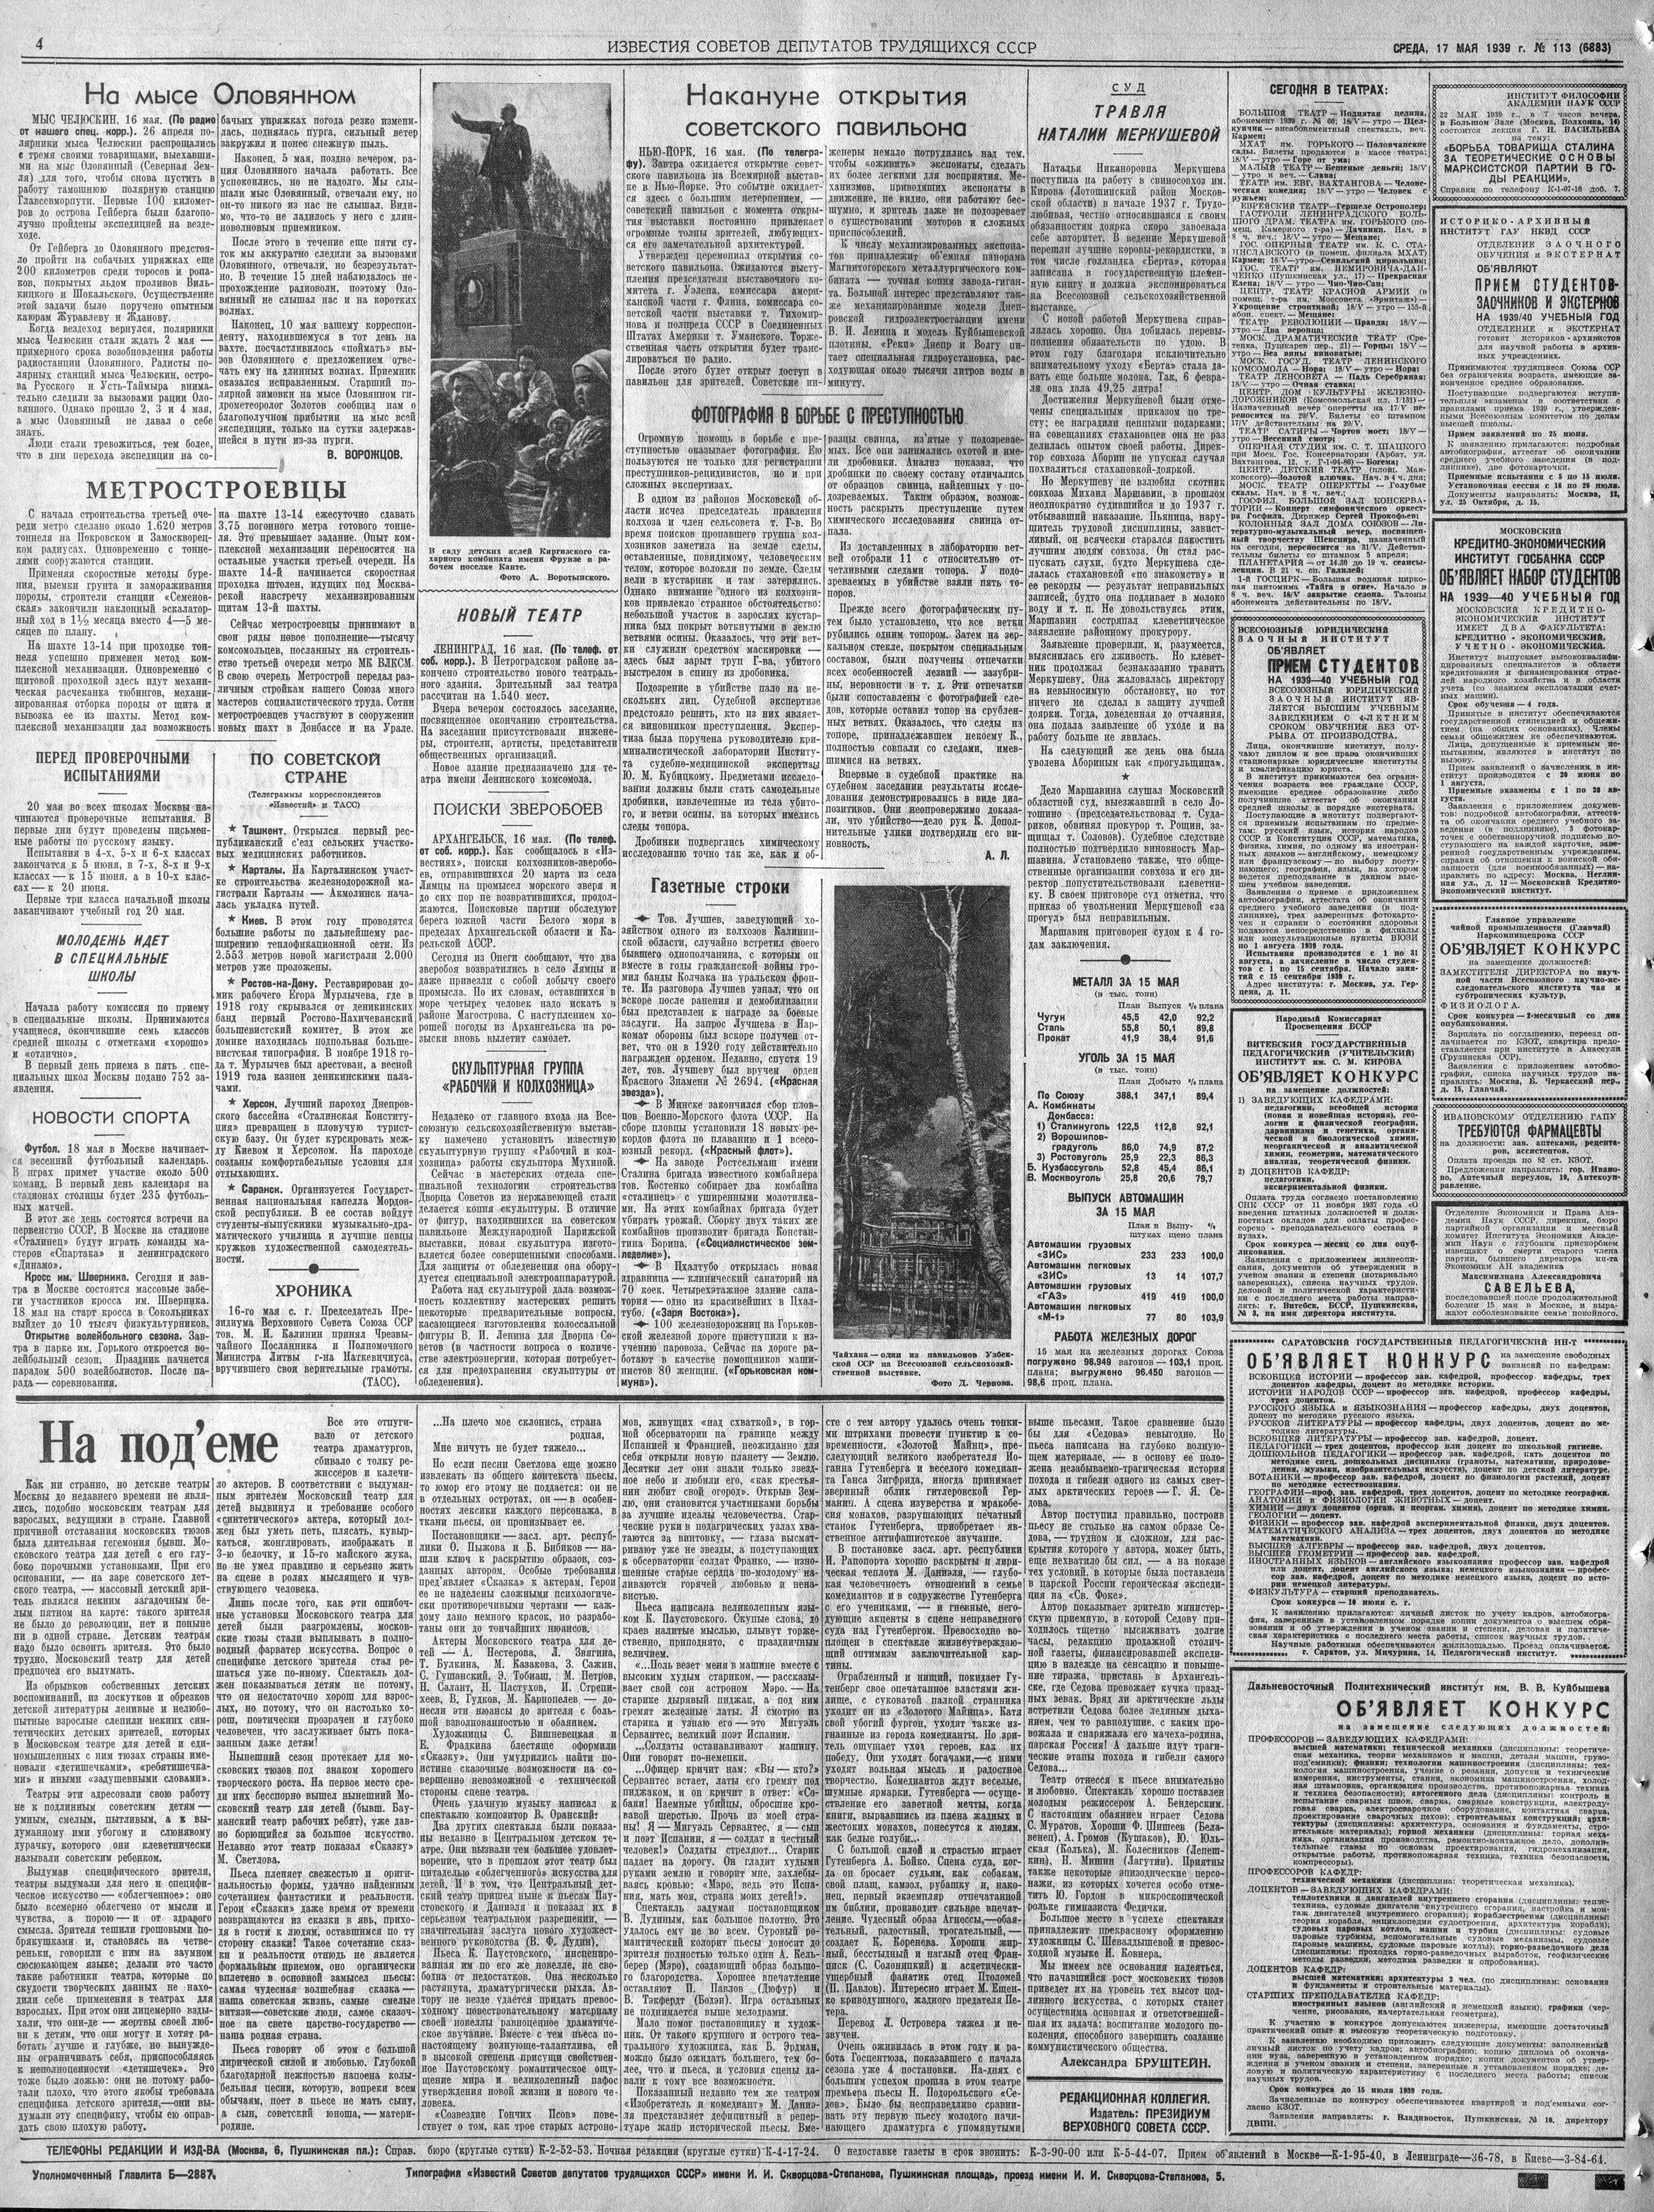 Газета Известия. Архив газеты Известия 1939 год. 1939 Архив издание.